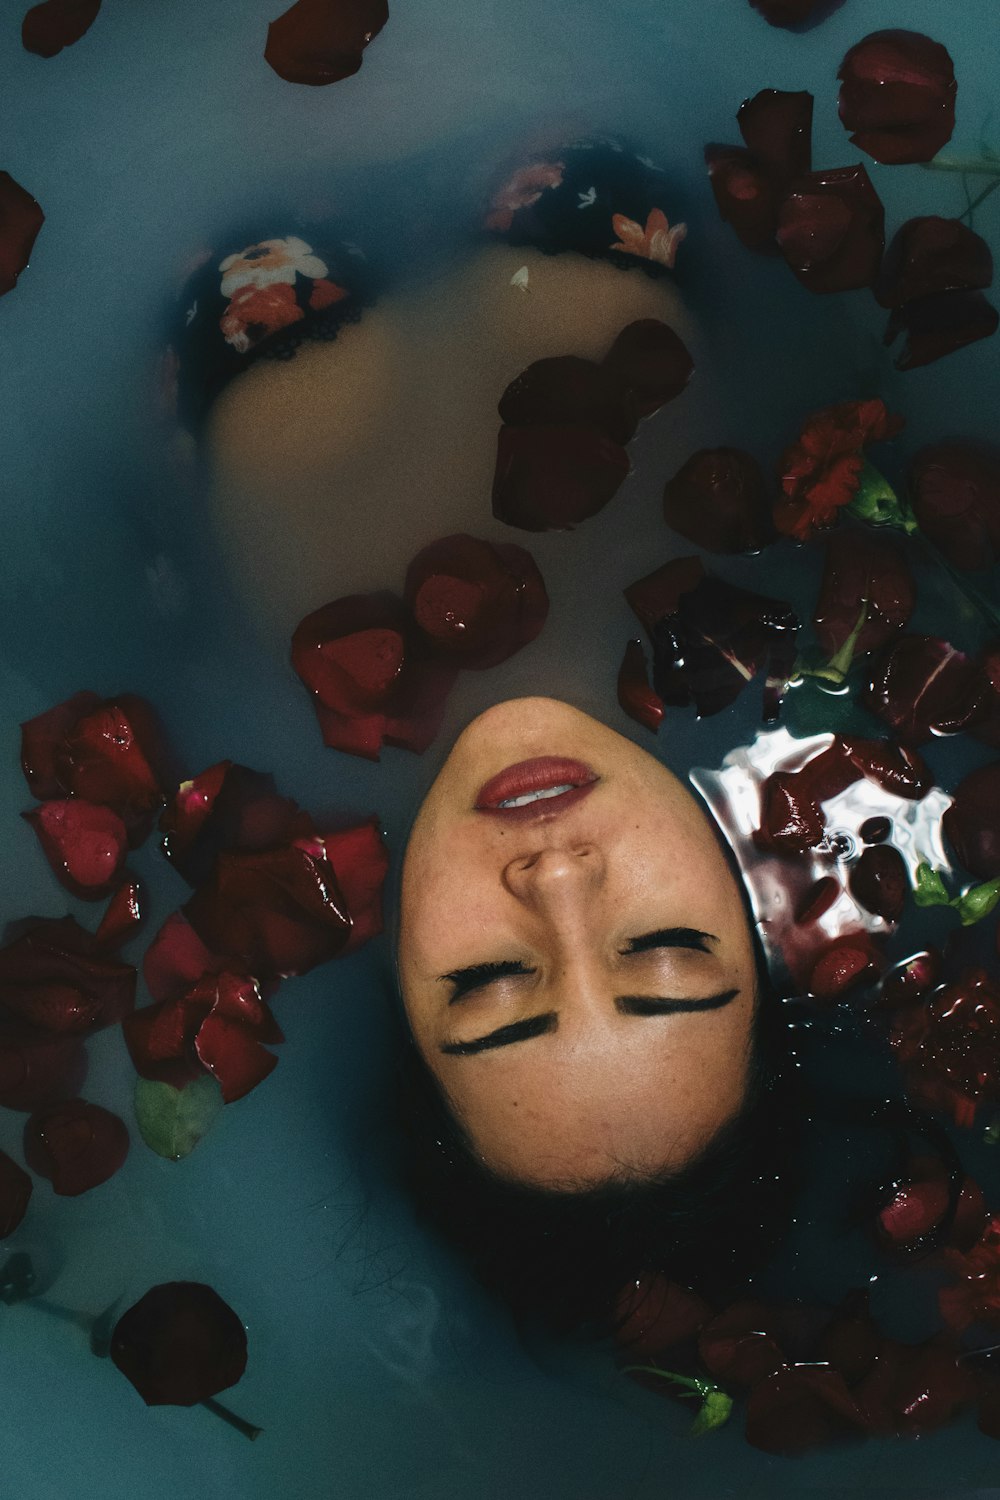 femme trempée dans de l’eau remplie de pétales rouges montrant le visage au-dessus de l’eau